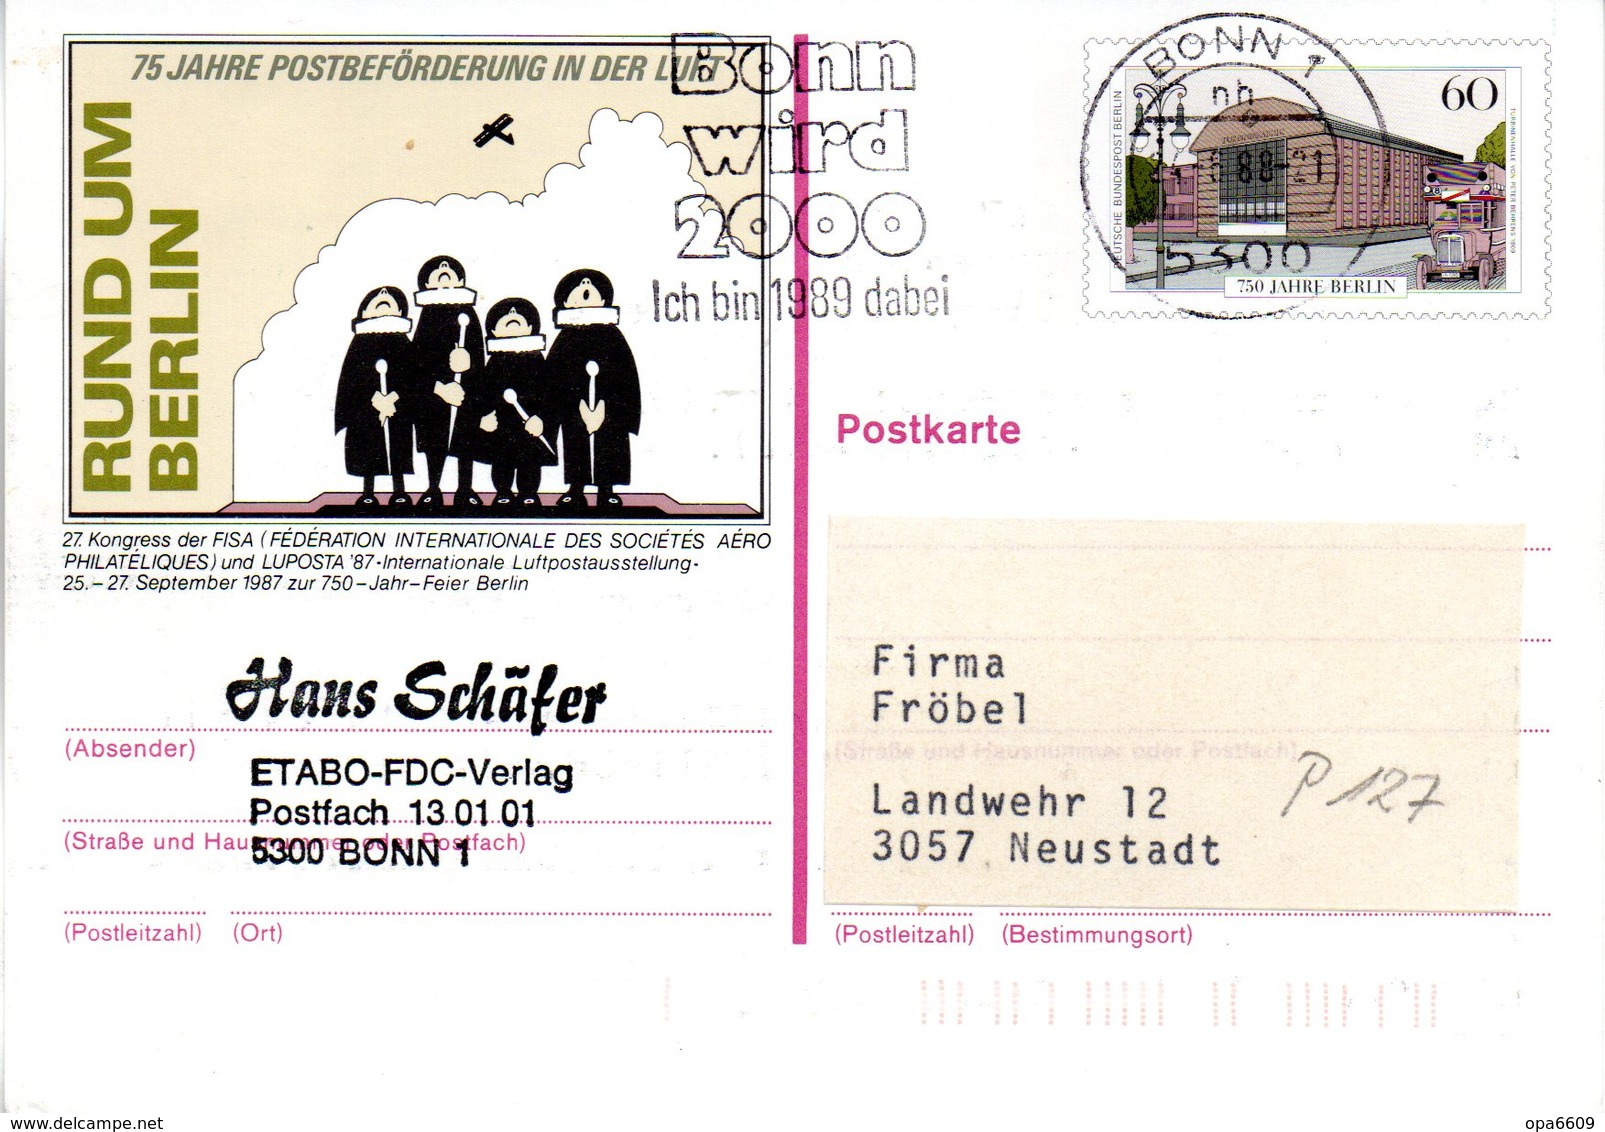 WB Amtliche Ganzsachen-Sonderpostkarte P 127 "LUPOSTA'87" Wst."750 Jahre Berlin" 60(Pf) Mehrfarbig, MWSt 24.8.88 BONN 1 - Postkarten - Gebraucht